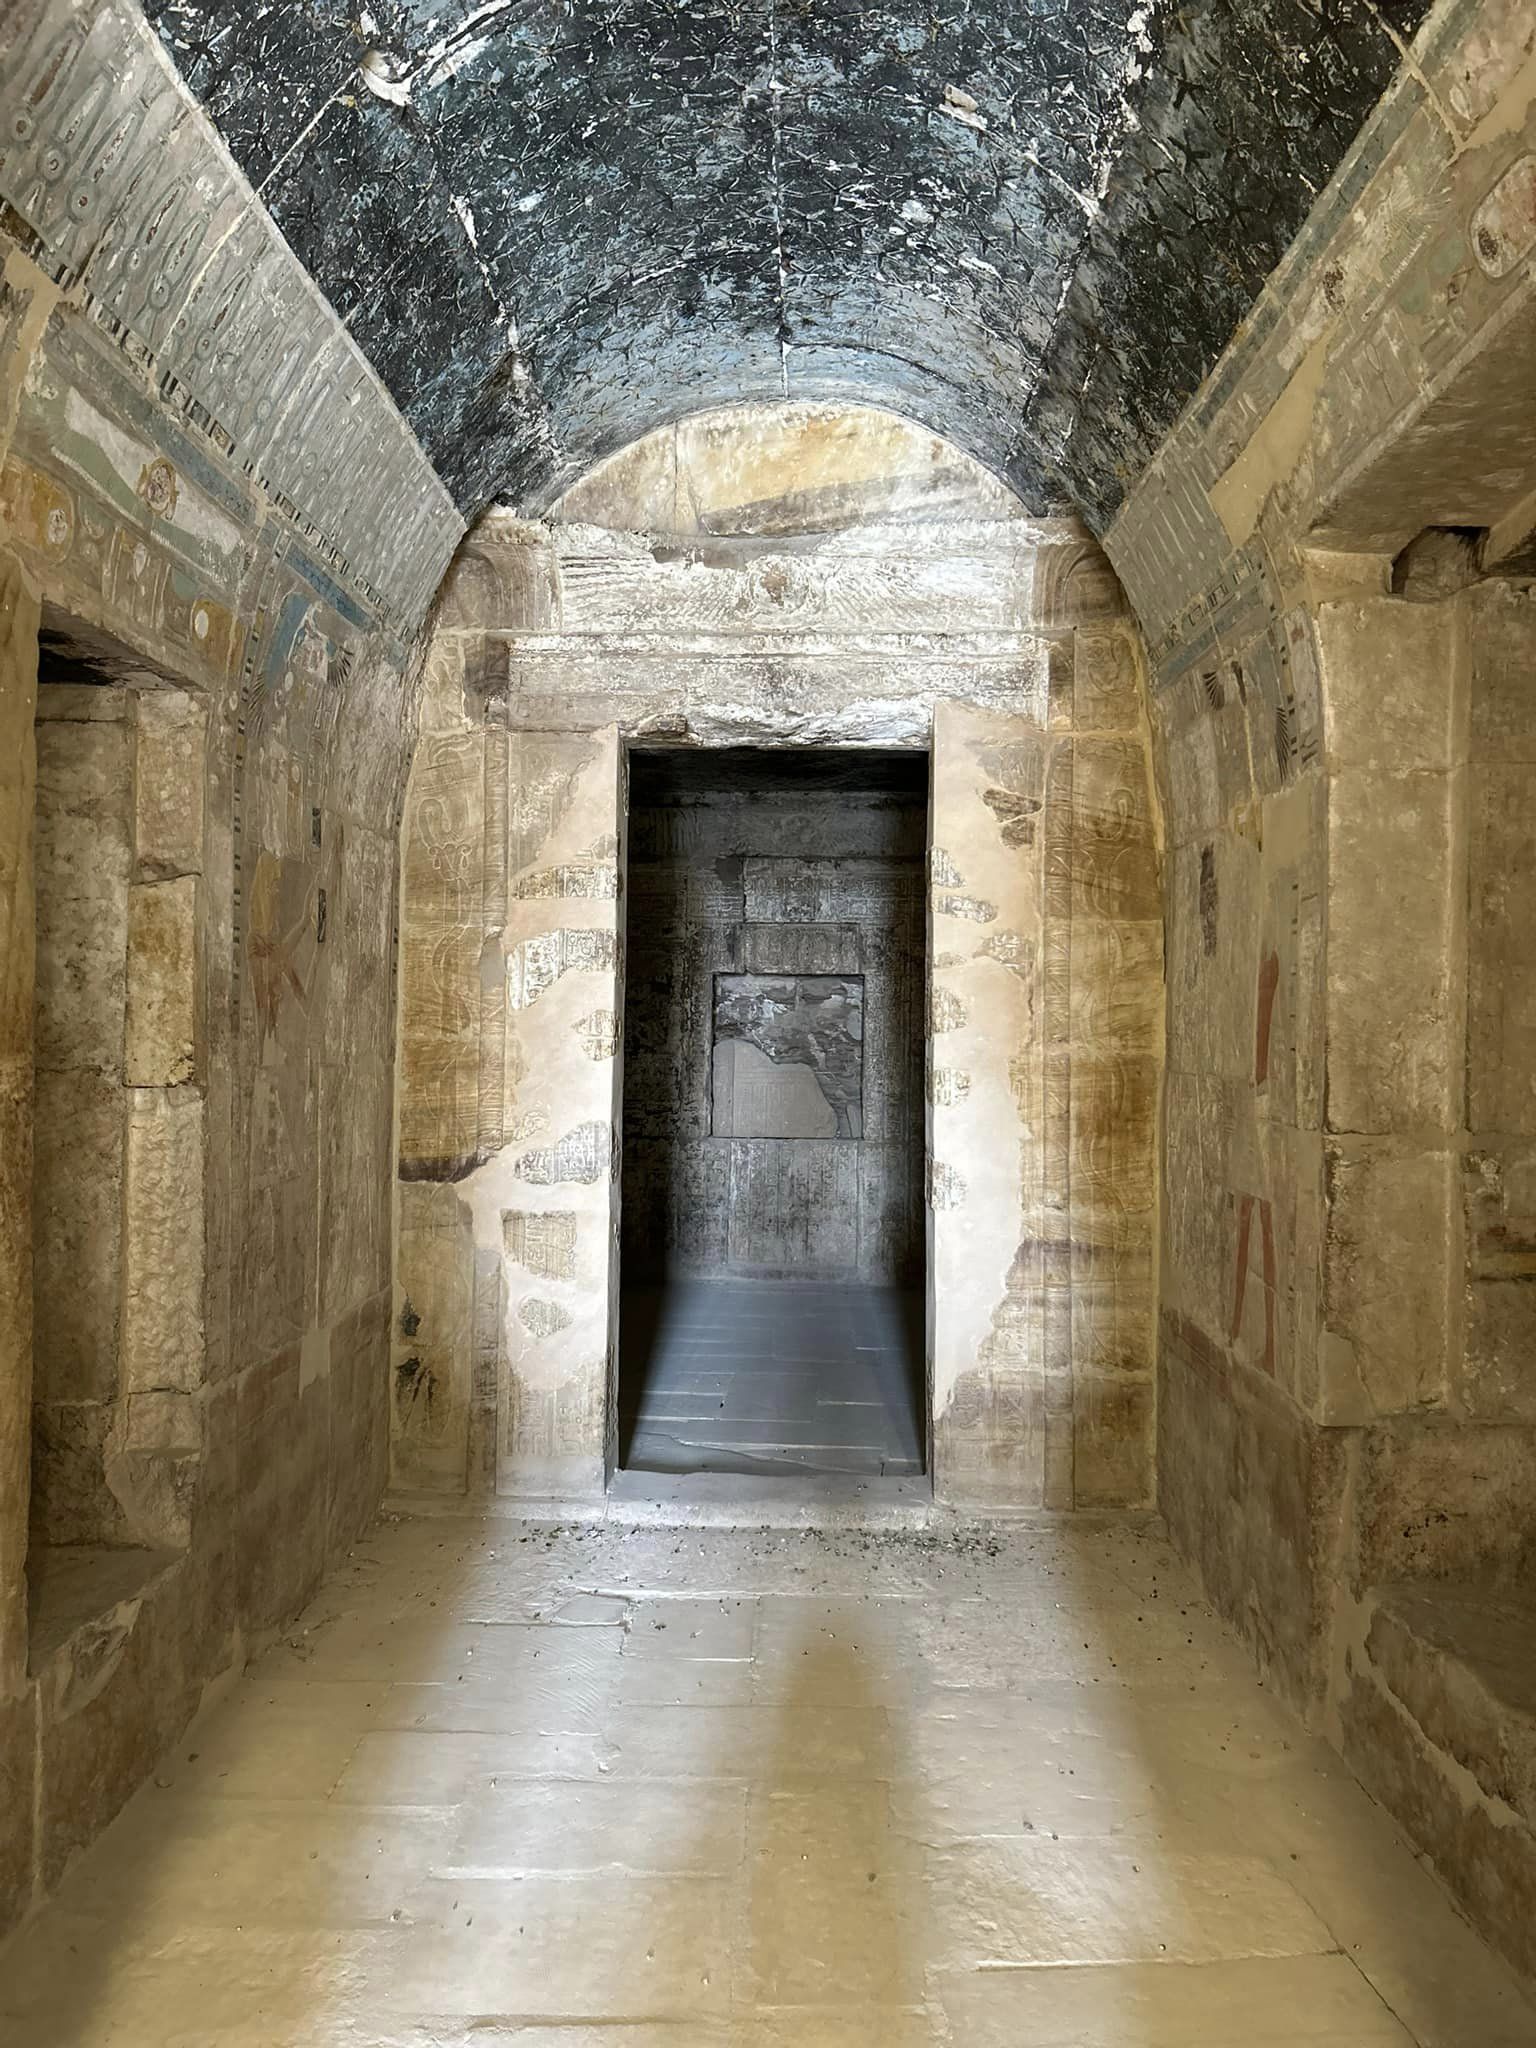 المقصورة الداخلية فى معبد الملكة حتشبسوت